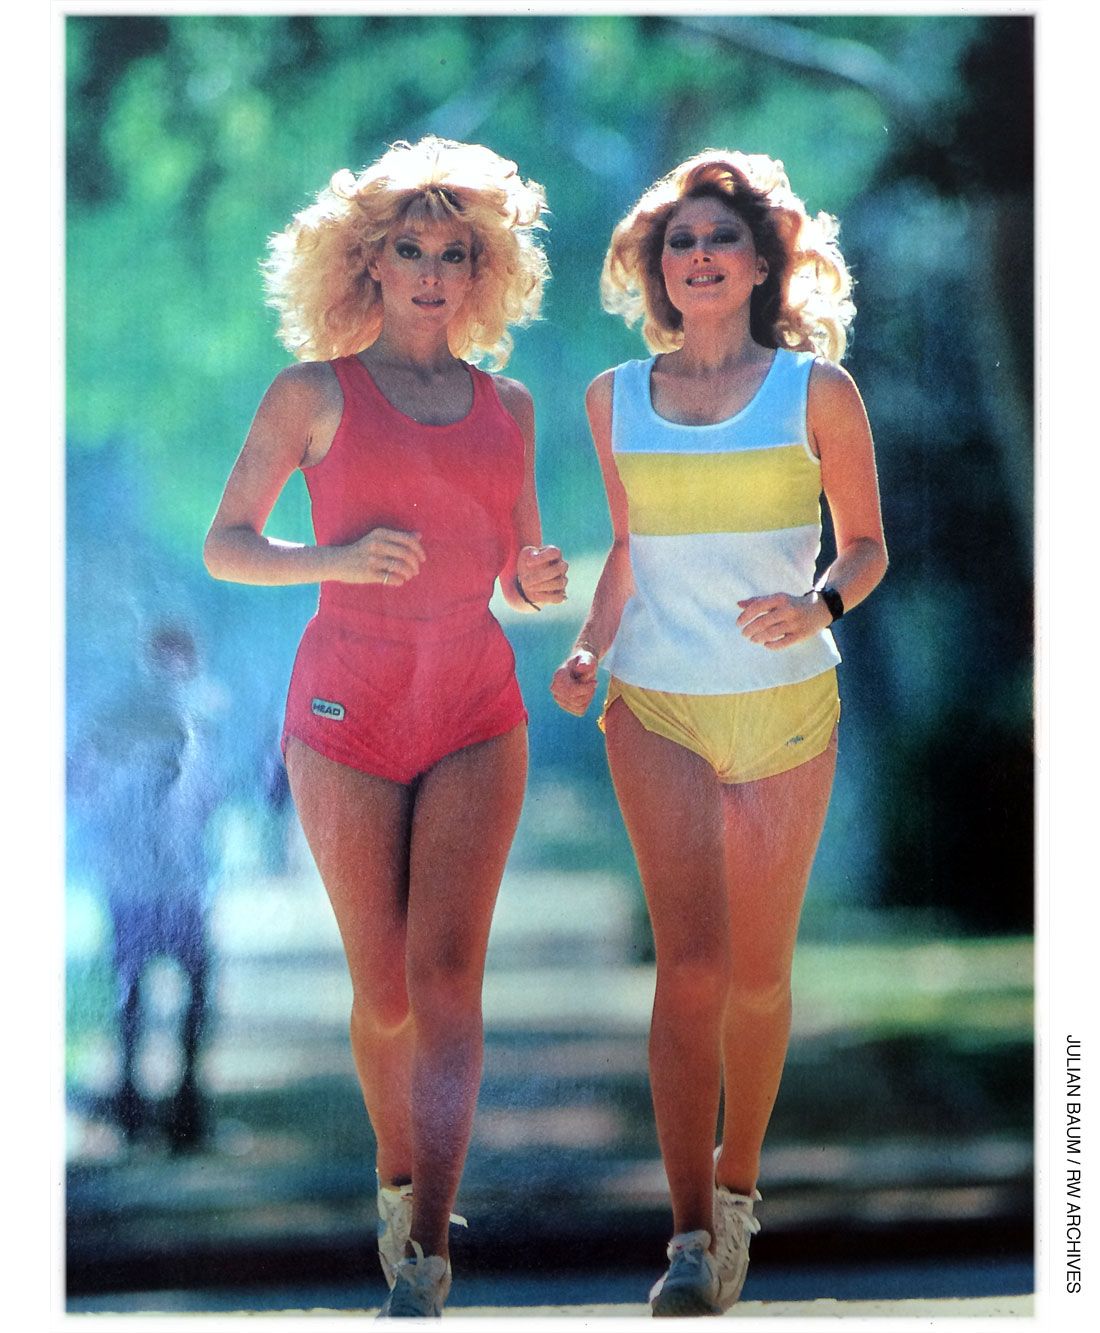 1980s running shorts